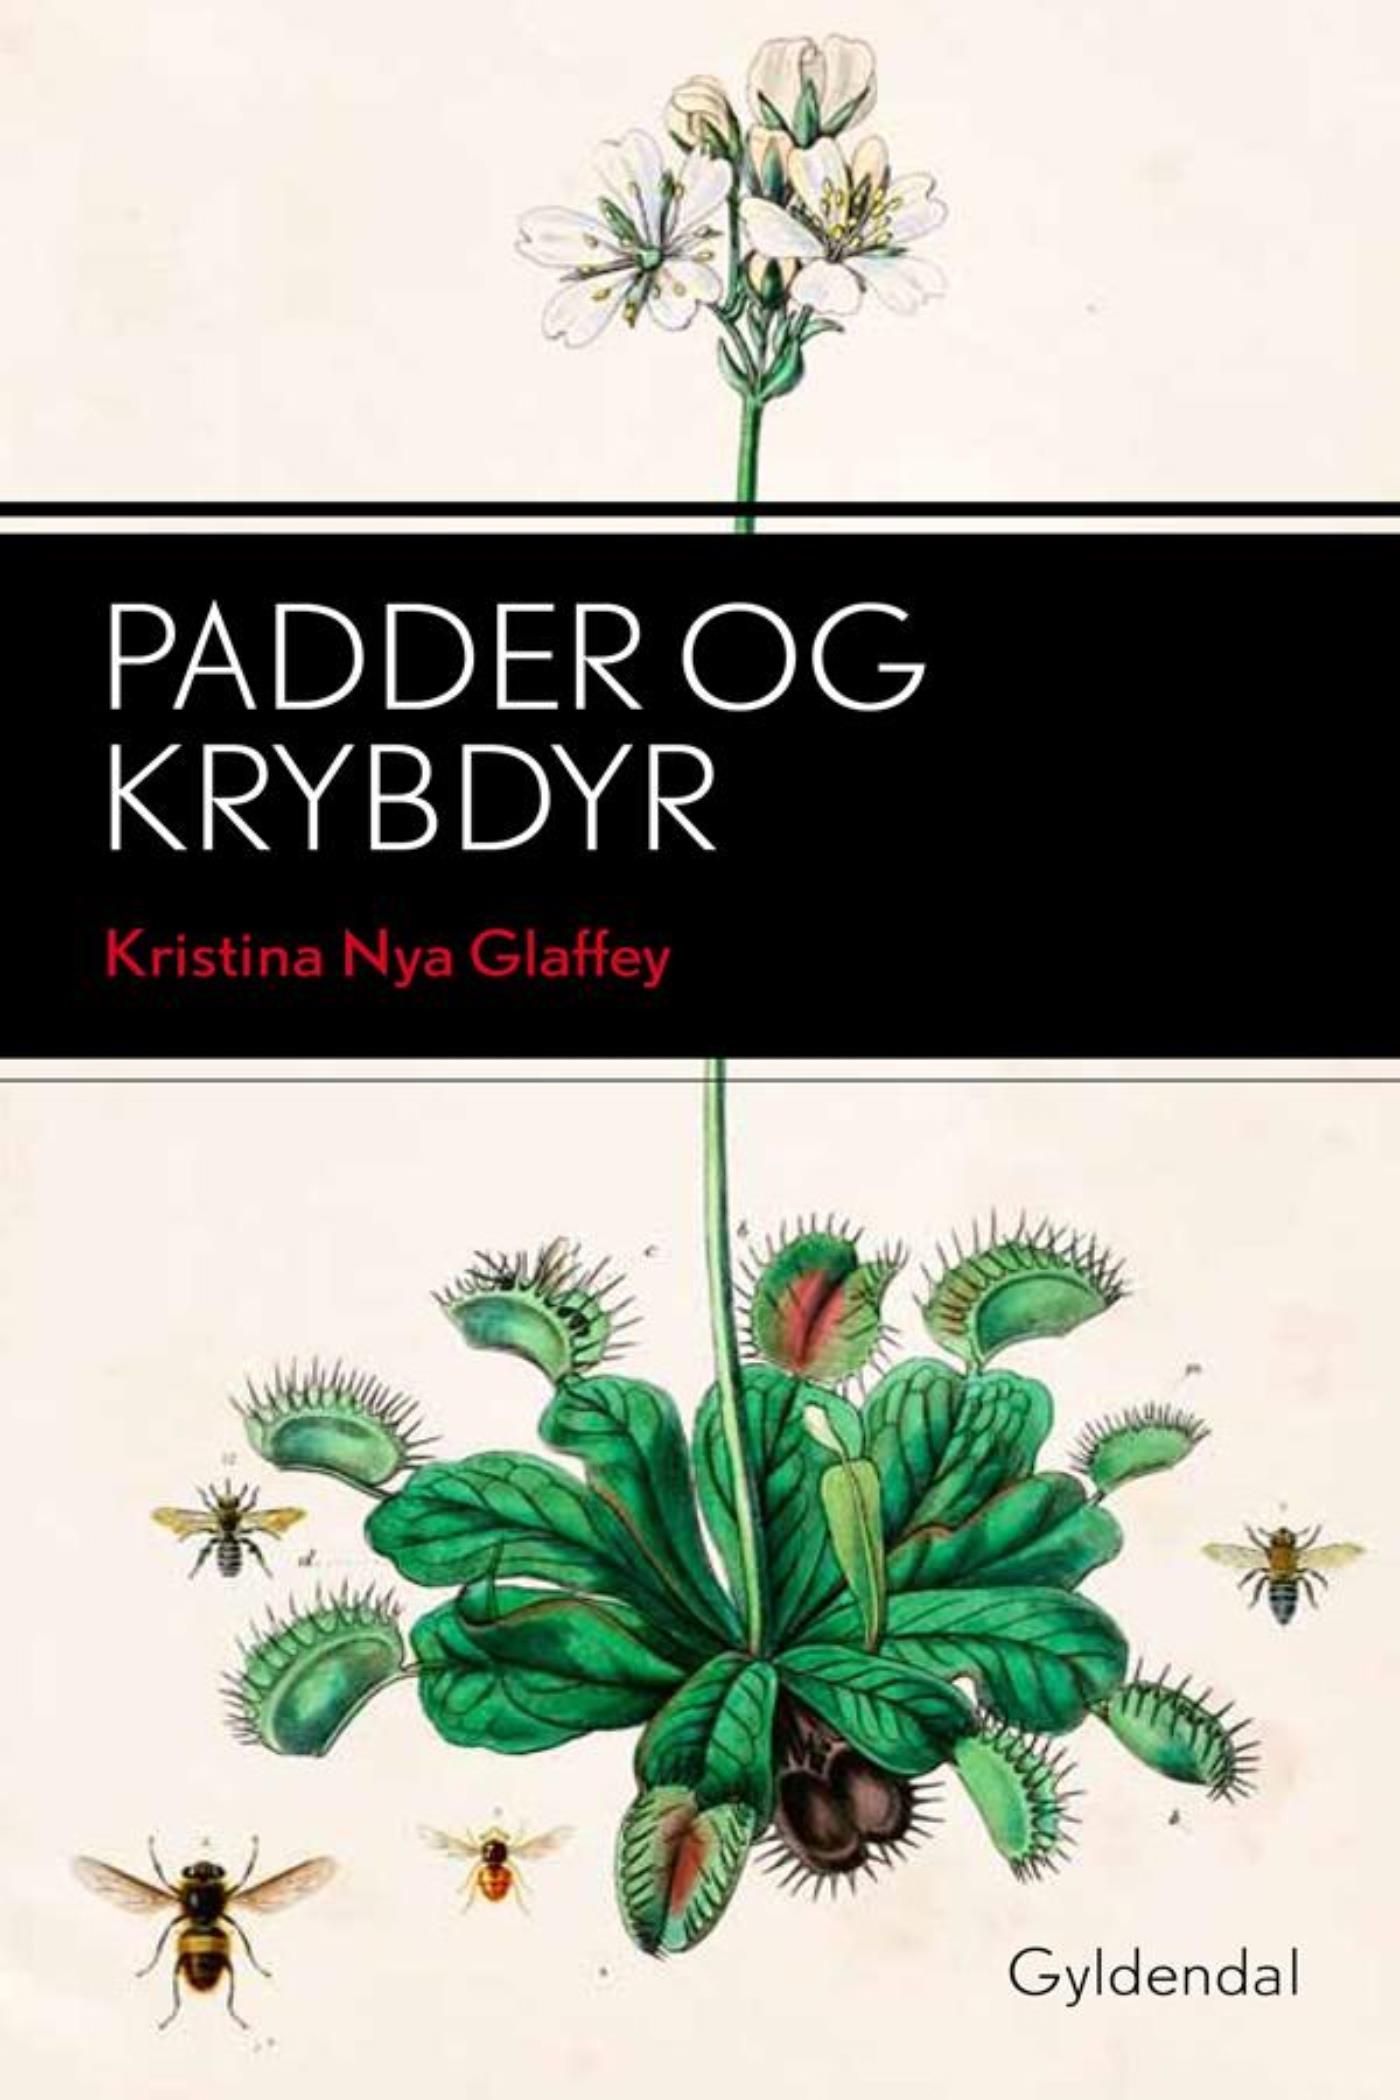 Padder og krybdyr, e-bog af Kristina Nya Glaffey